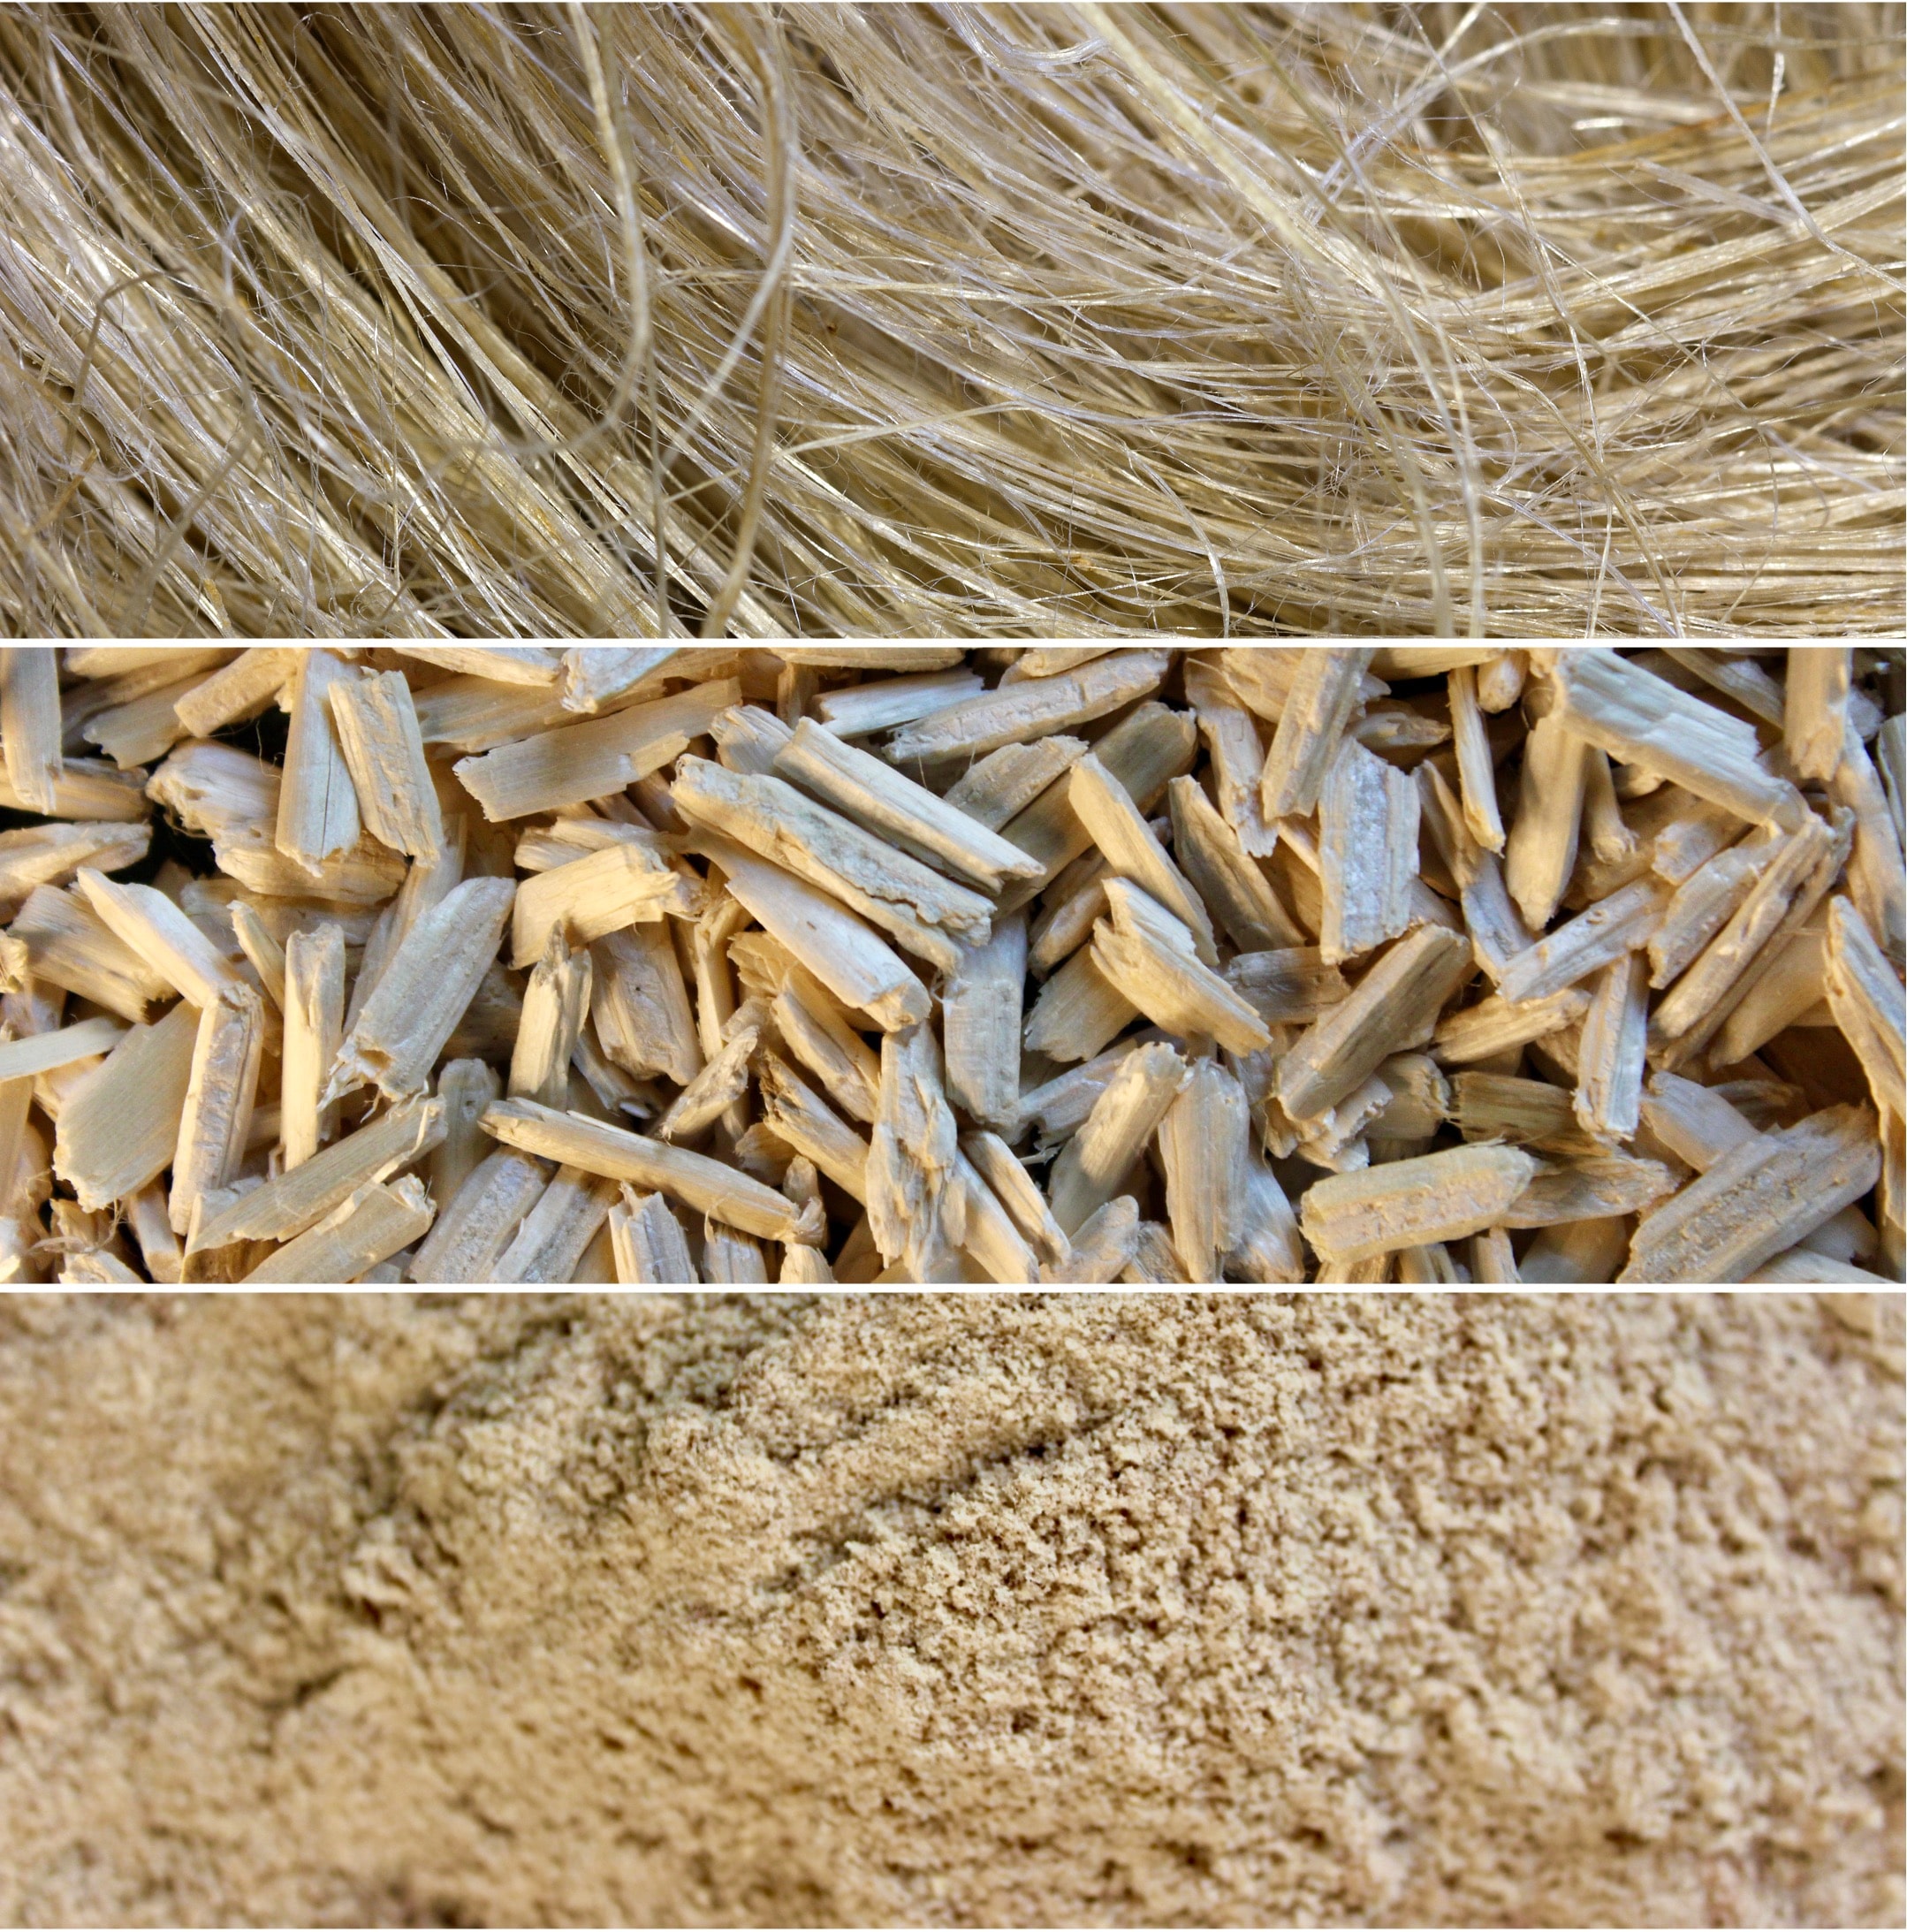 Close-up of industrial hemp fibers, hemp hurd, and hemp dust.